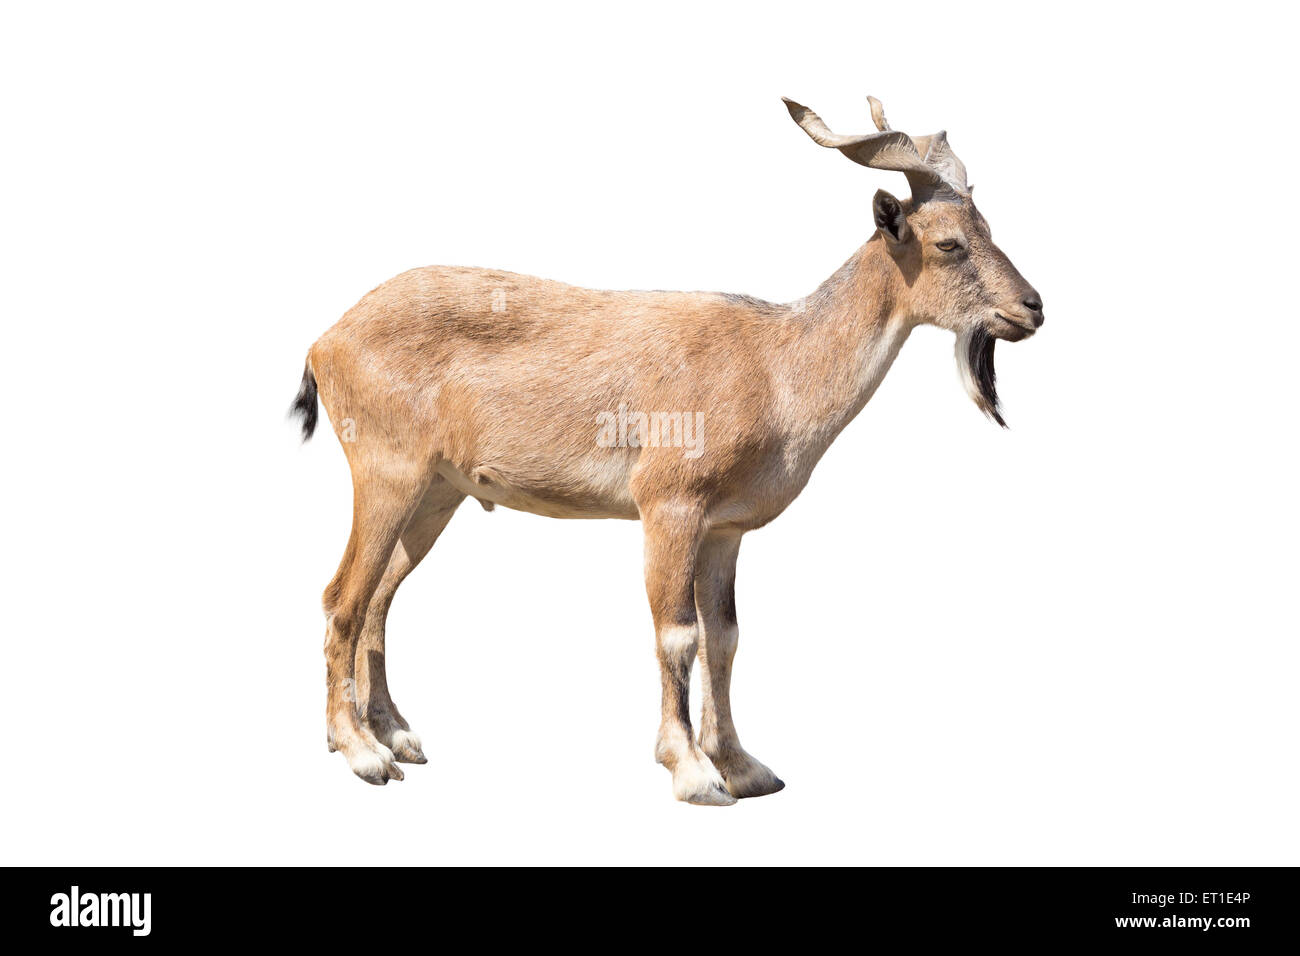 El markhor aislado sobre fondo blanco, el markhor es una especie grande de cabra salvaje que se encuentra en el noreste de Afganistán Foto de stock